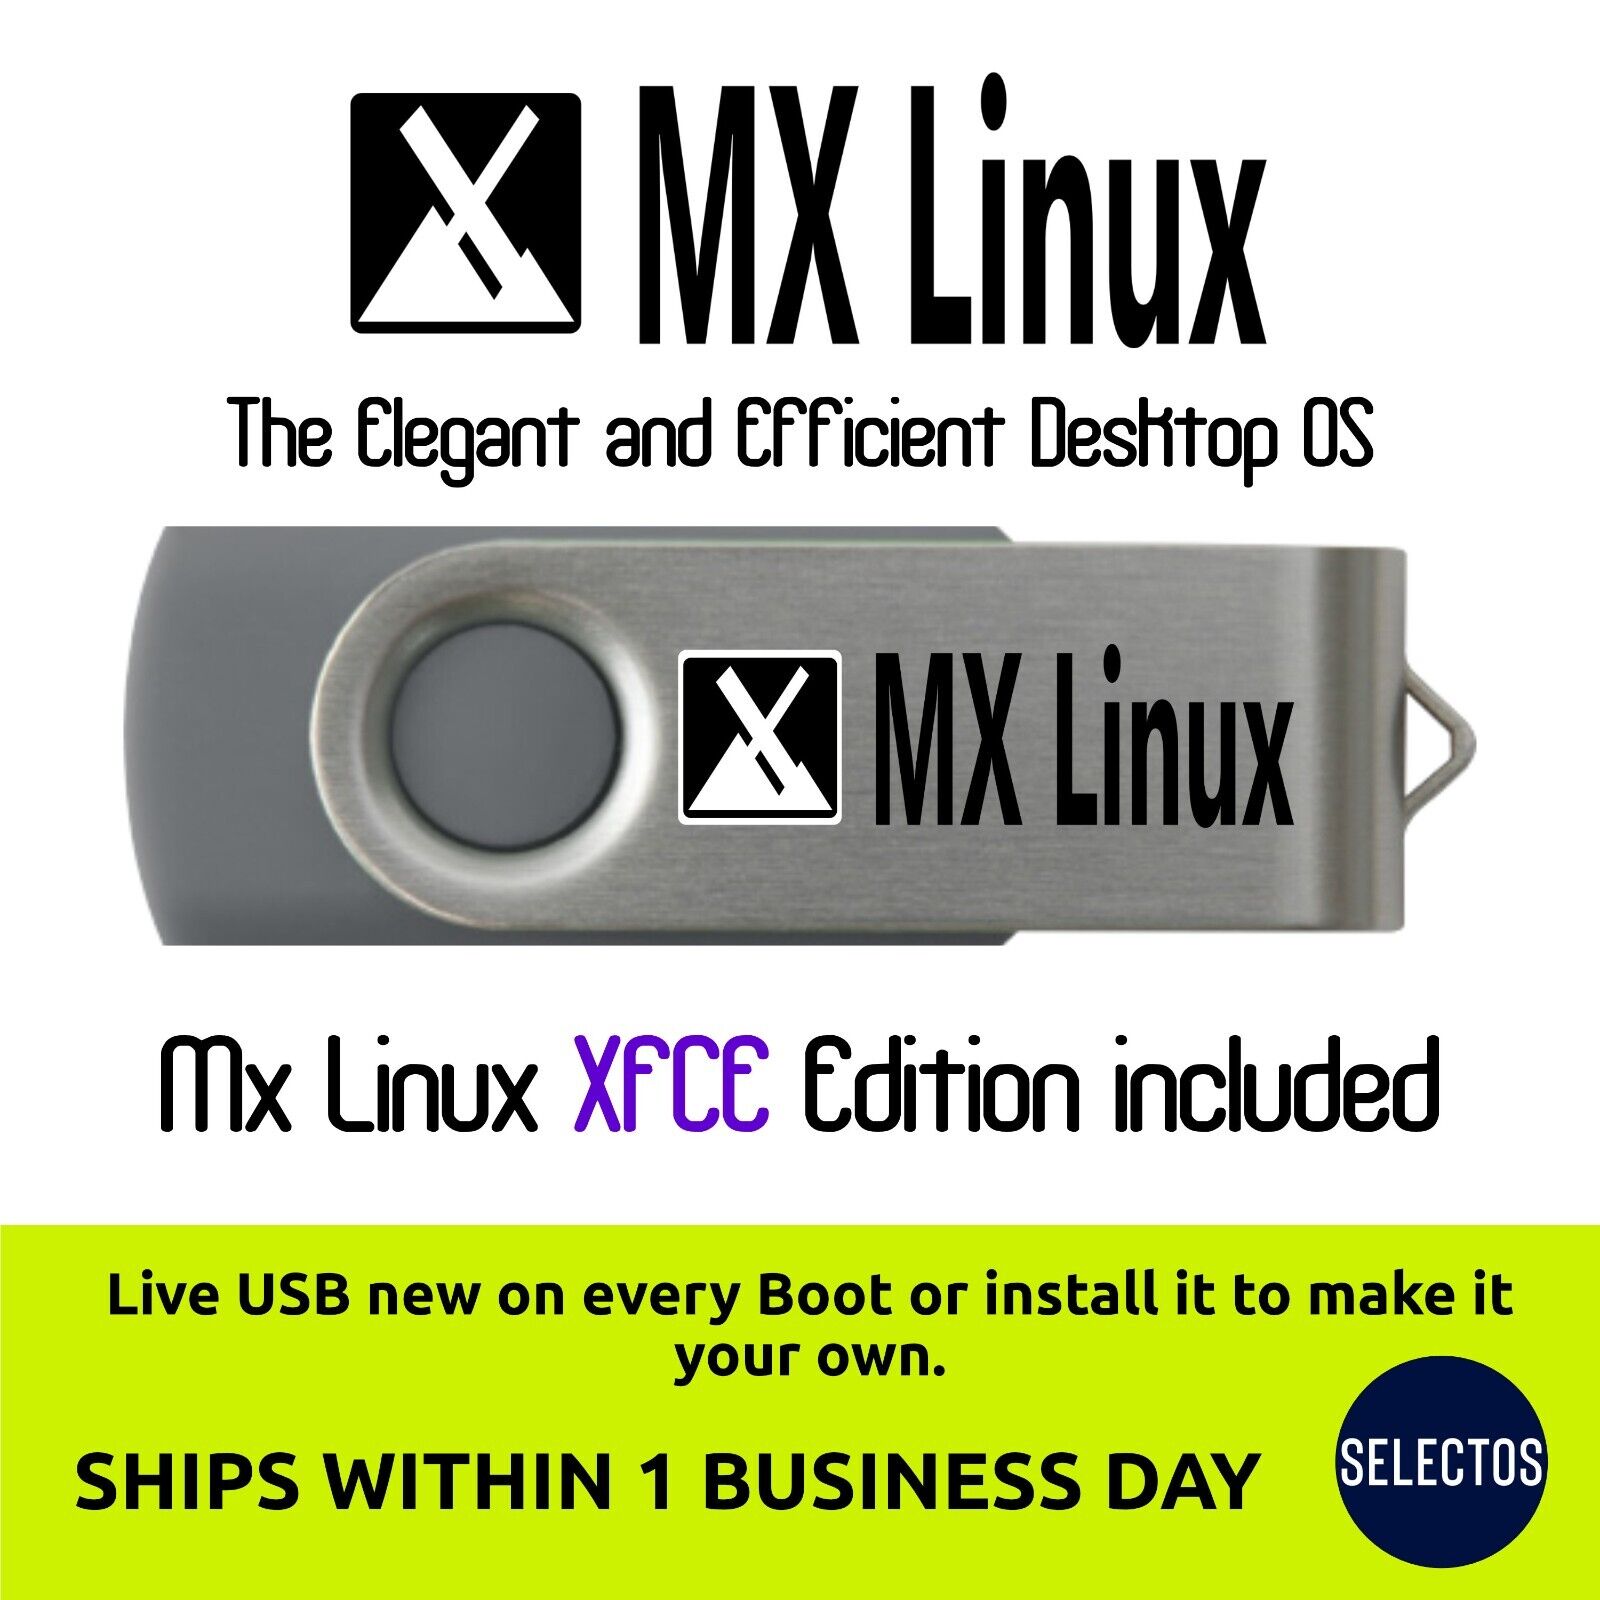 MX Linux 21.2 XFCE Edition 64bit 16Gb USB Drive Ships Free Within 1 Biz Day